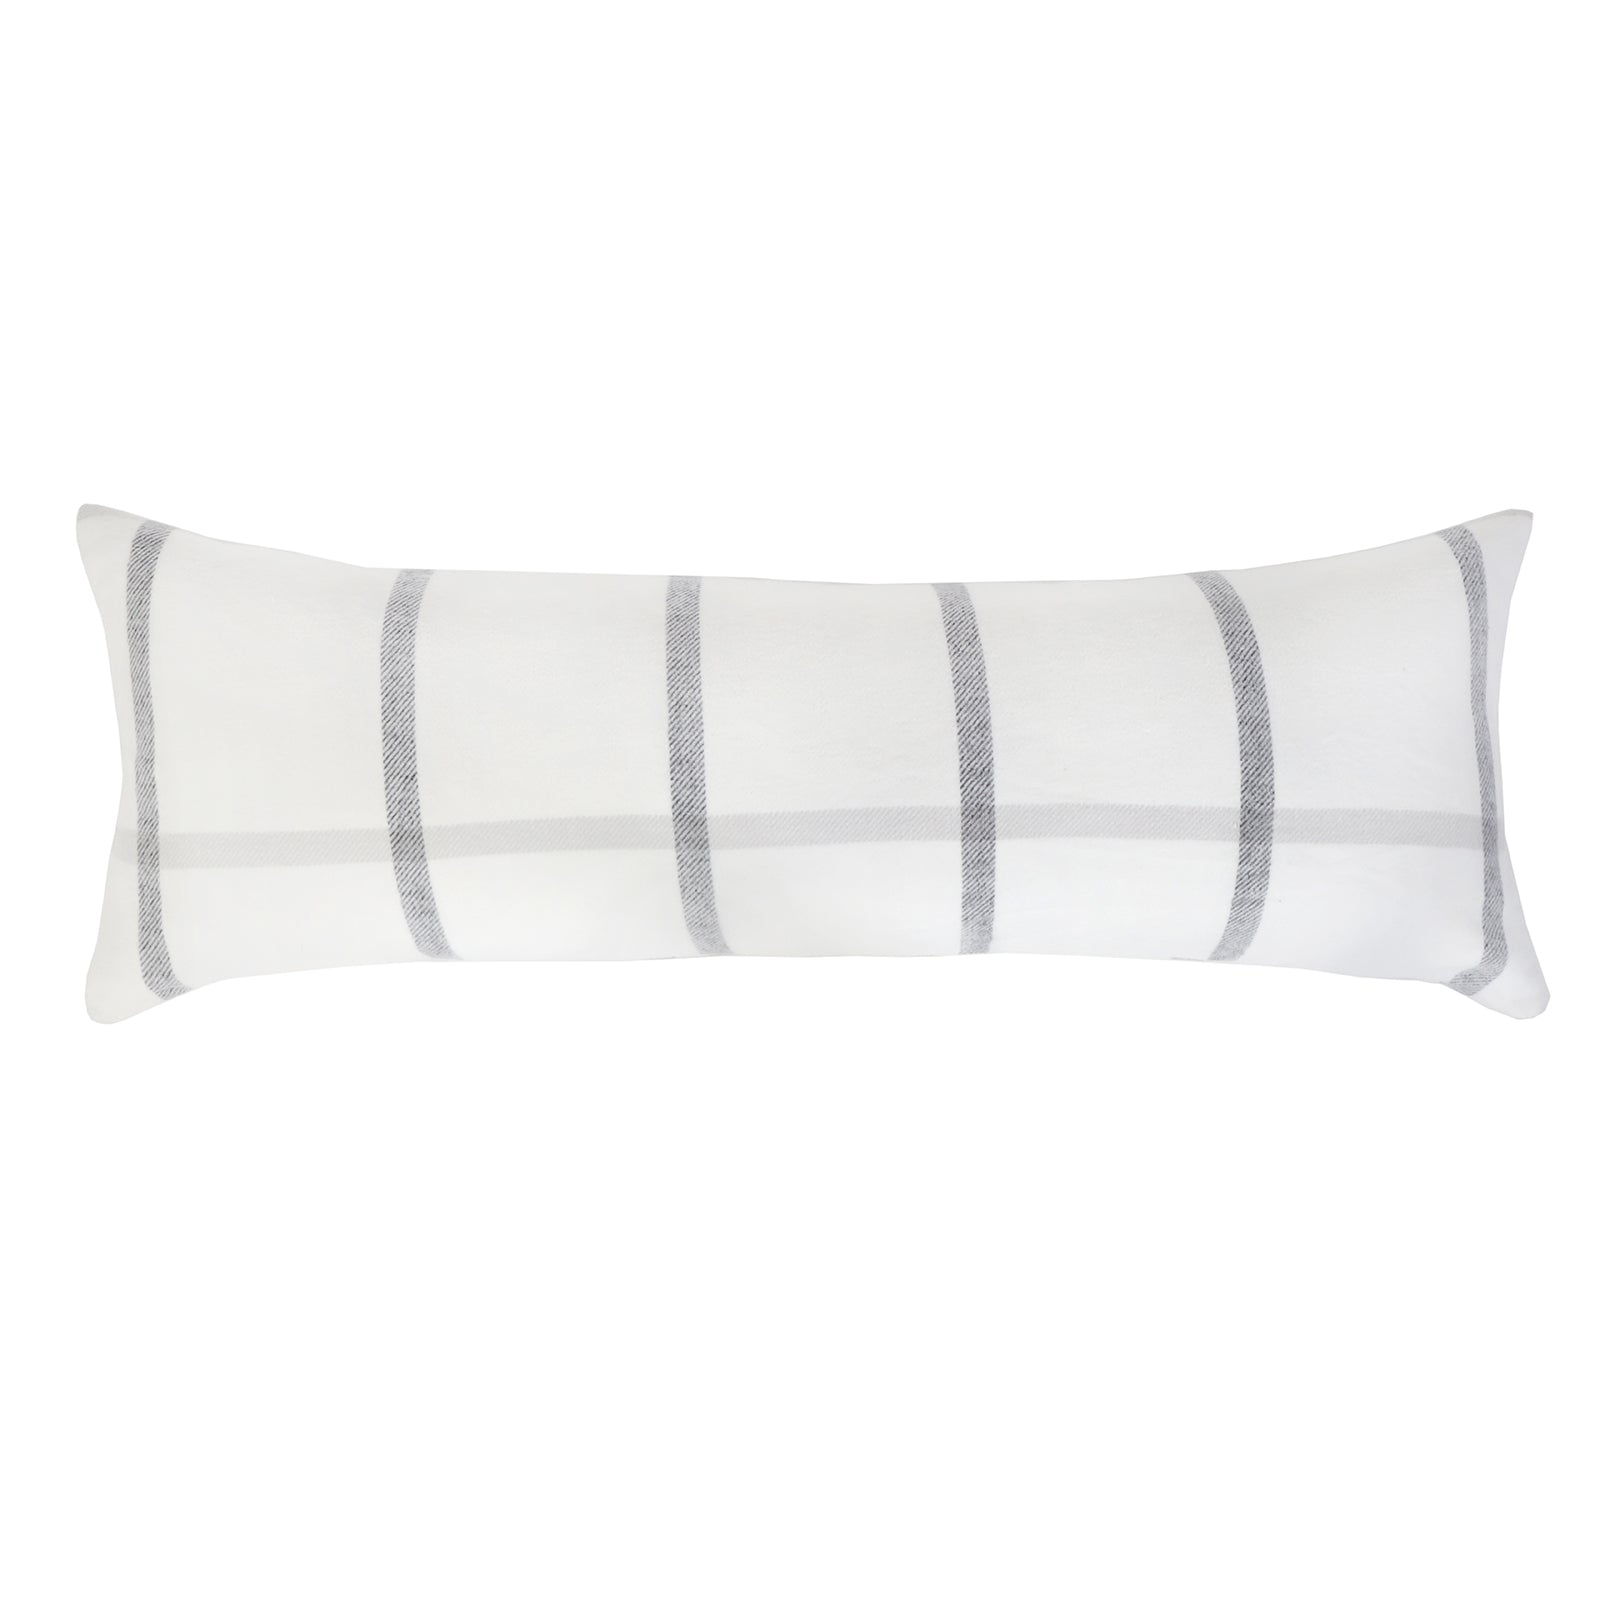 copenhagen - white/grey color - body pillow - pom pom at home